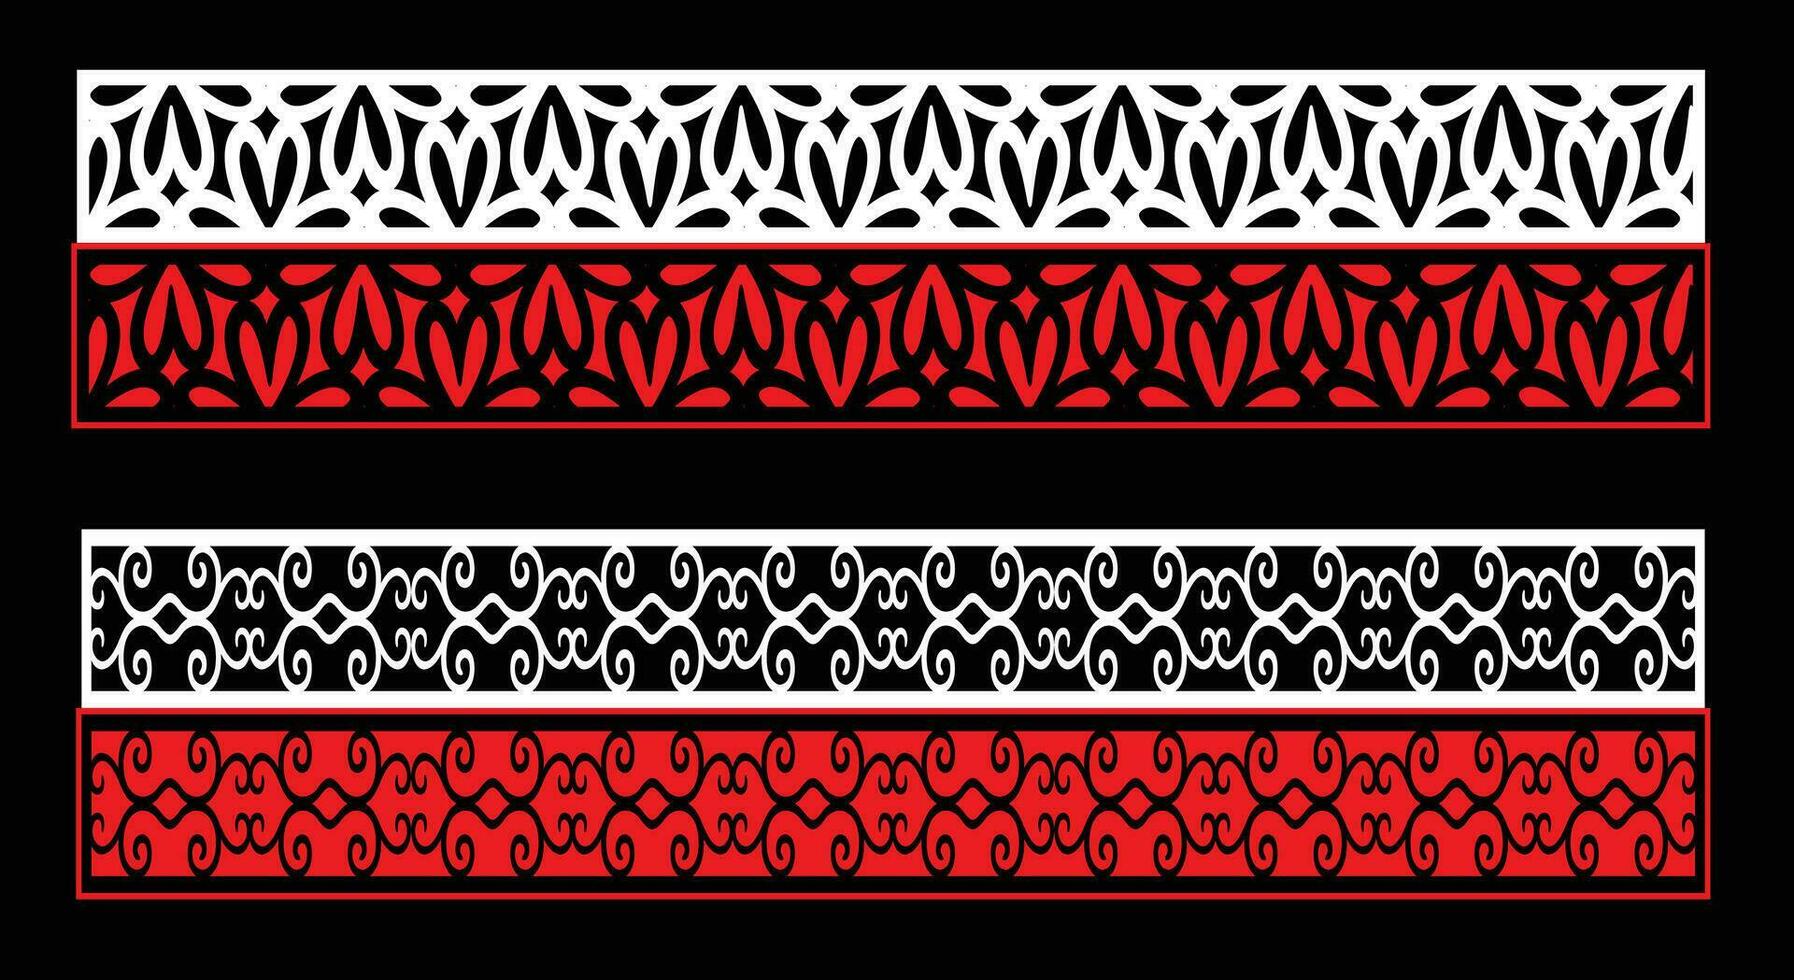 dekorativ Mauer Paneele einstellen jali Design cnc Muster, Laser- Schneiden Muster, Router cnccutting.jali Laser- Schnitt dekorativ Panel einstellen mit Spitze Muster. vektor